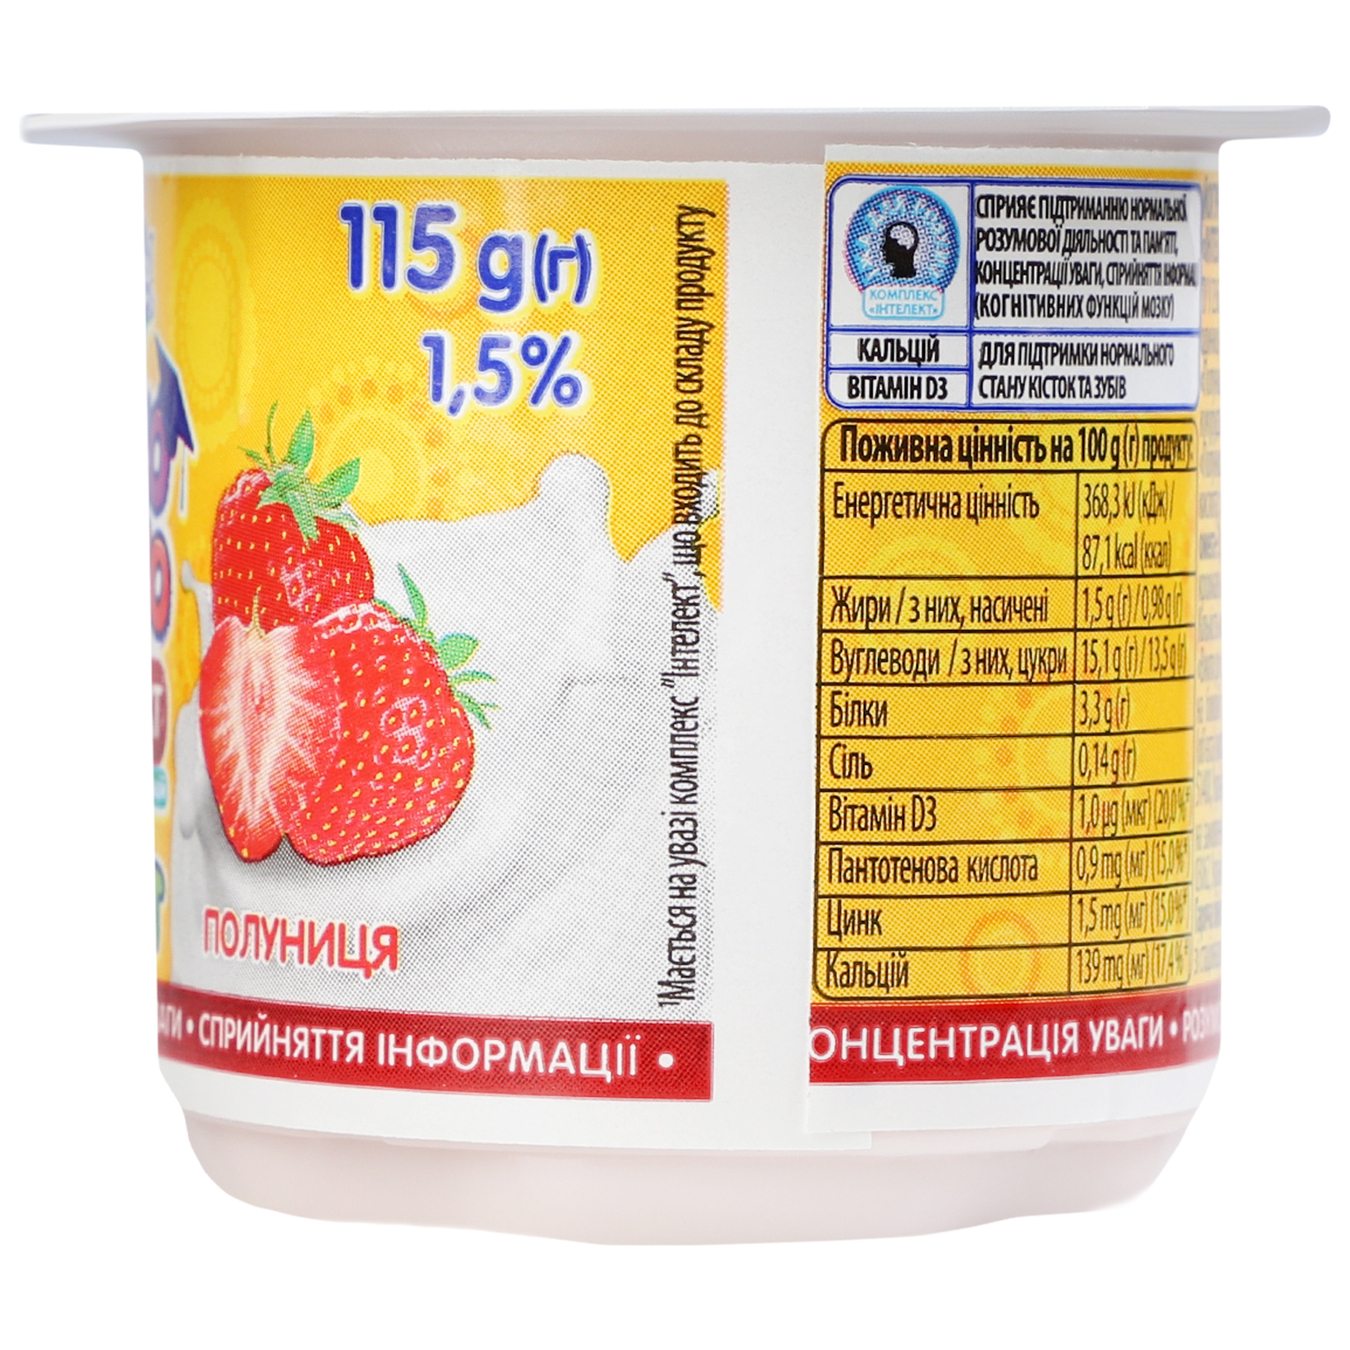 Yogurt Loko Moko with strawberries 1.5% 115g 5